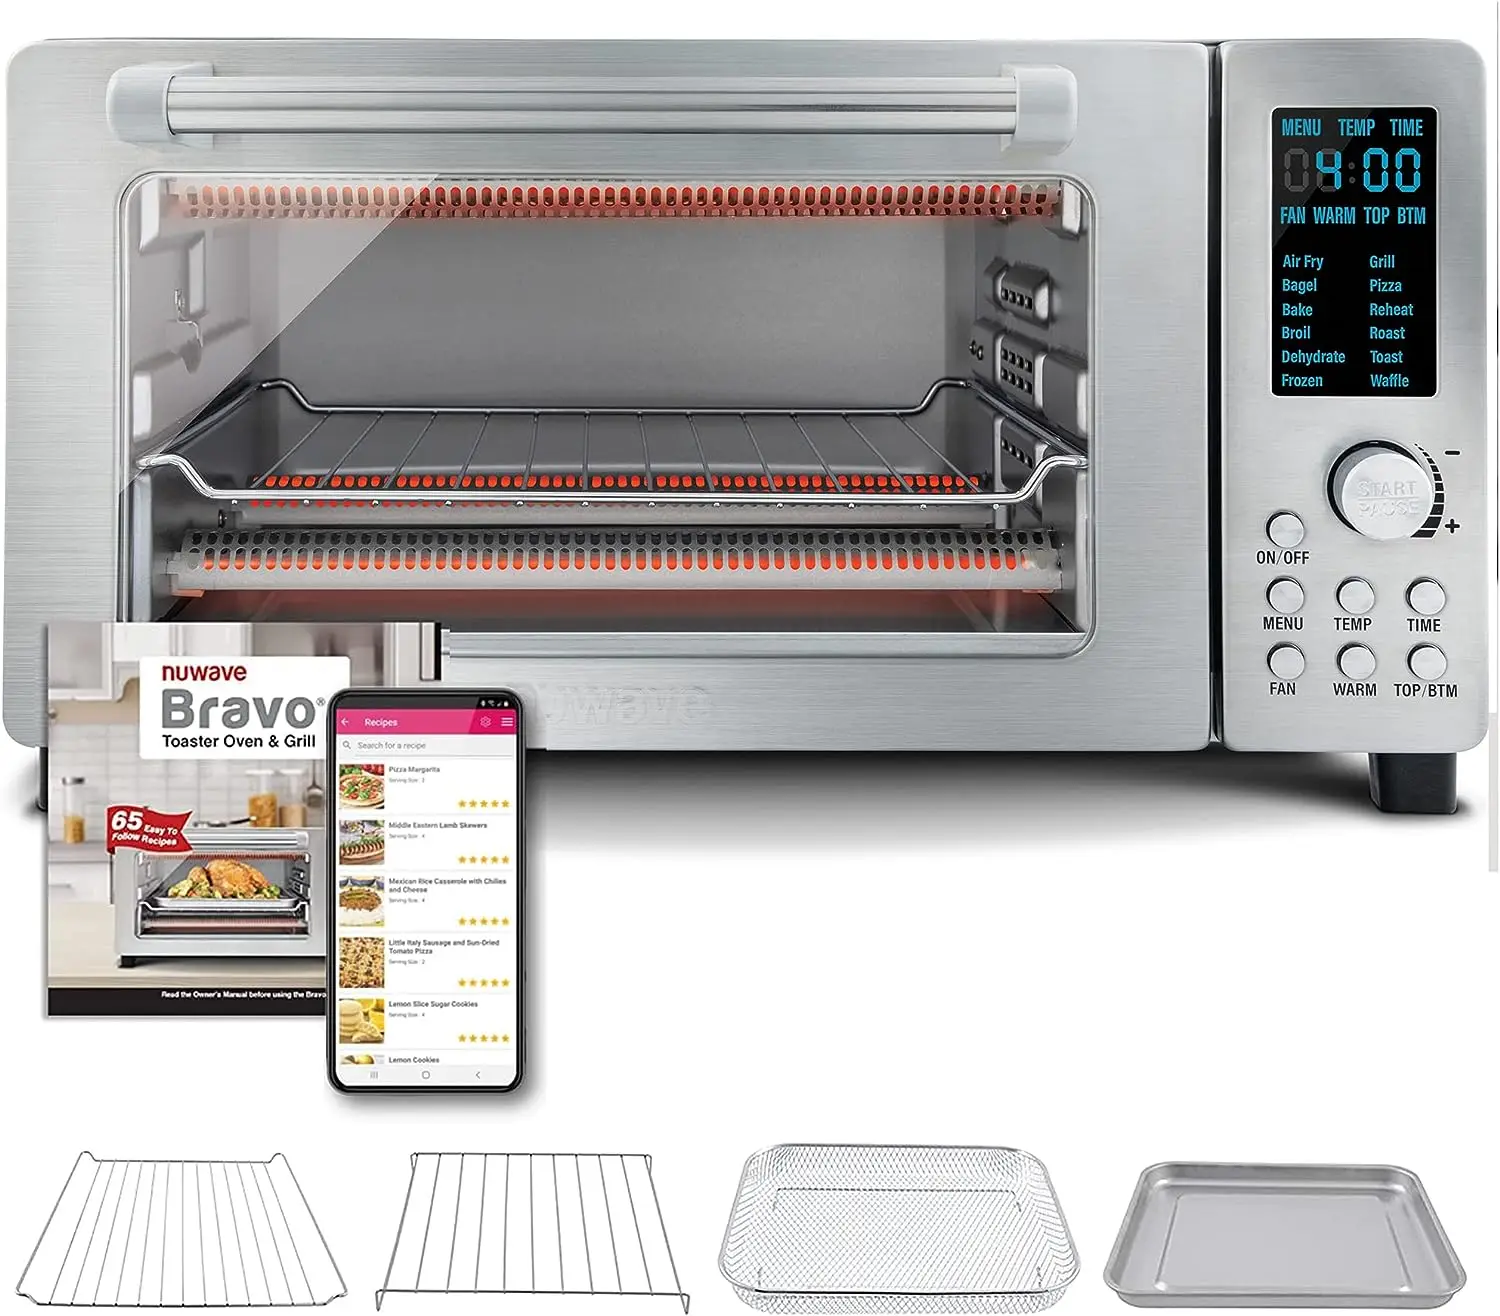 

Цифровая духовка-тостер 12 в 1, комбинированная конвекционная печь для столешницы и воздушная фритюрница, 1800 Вт, емкость 21-Qt, с температурой 50-450 °F